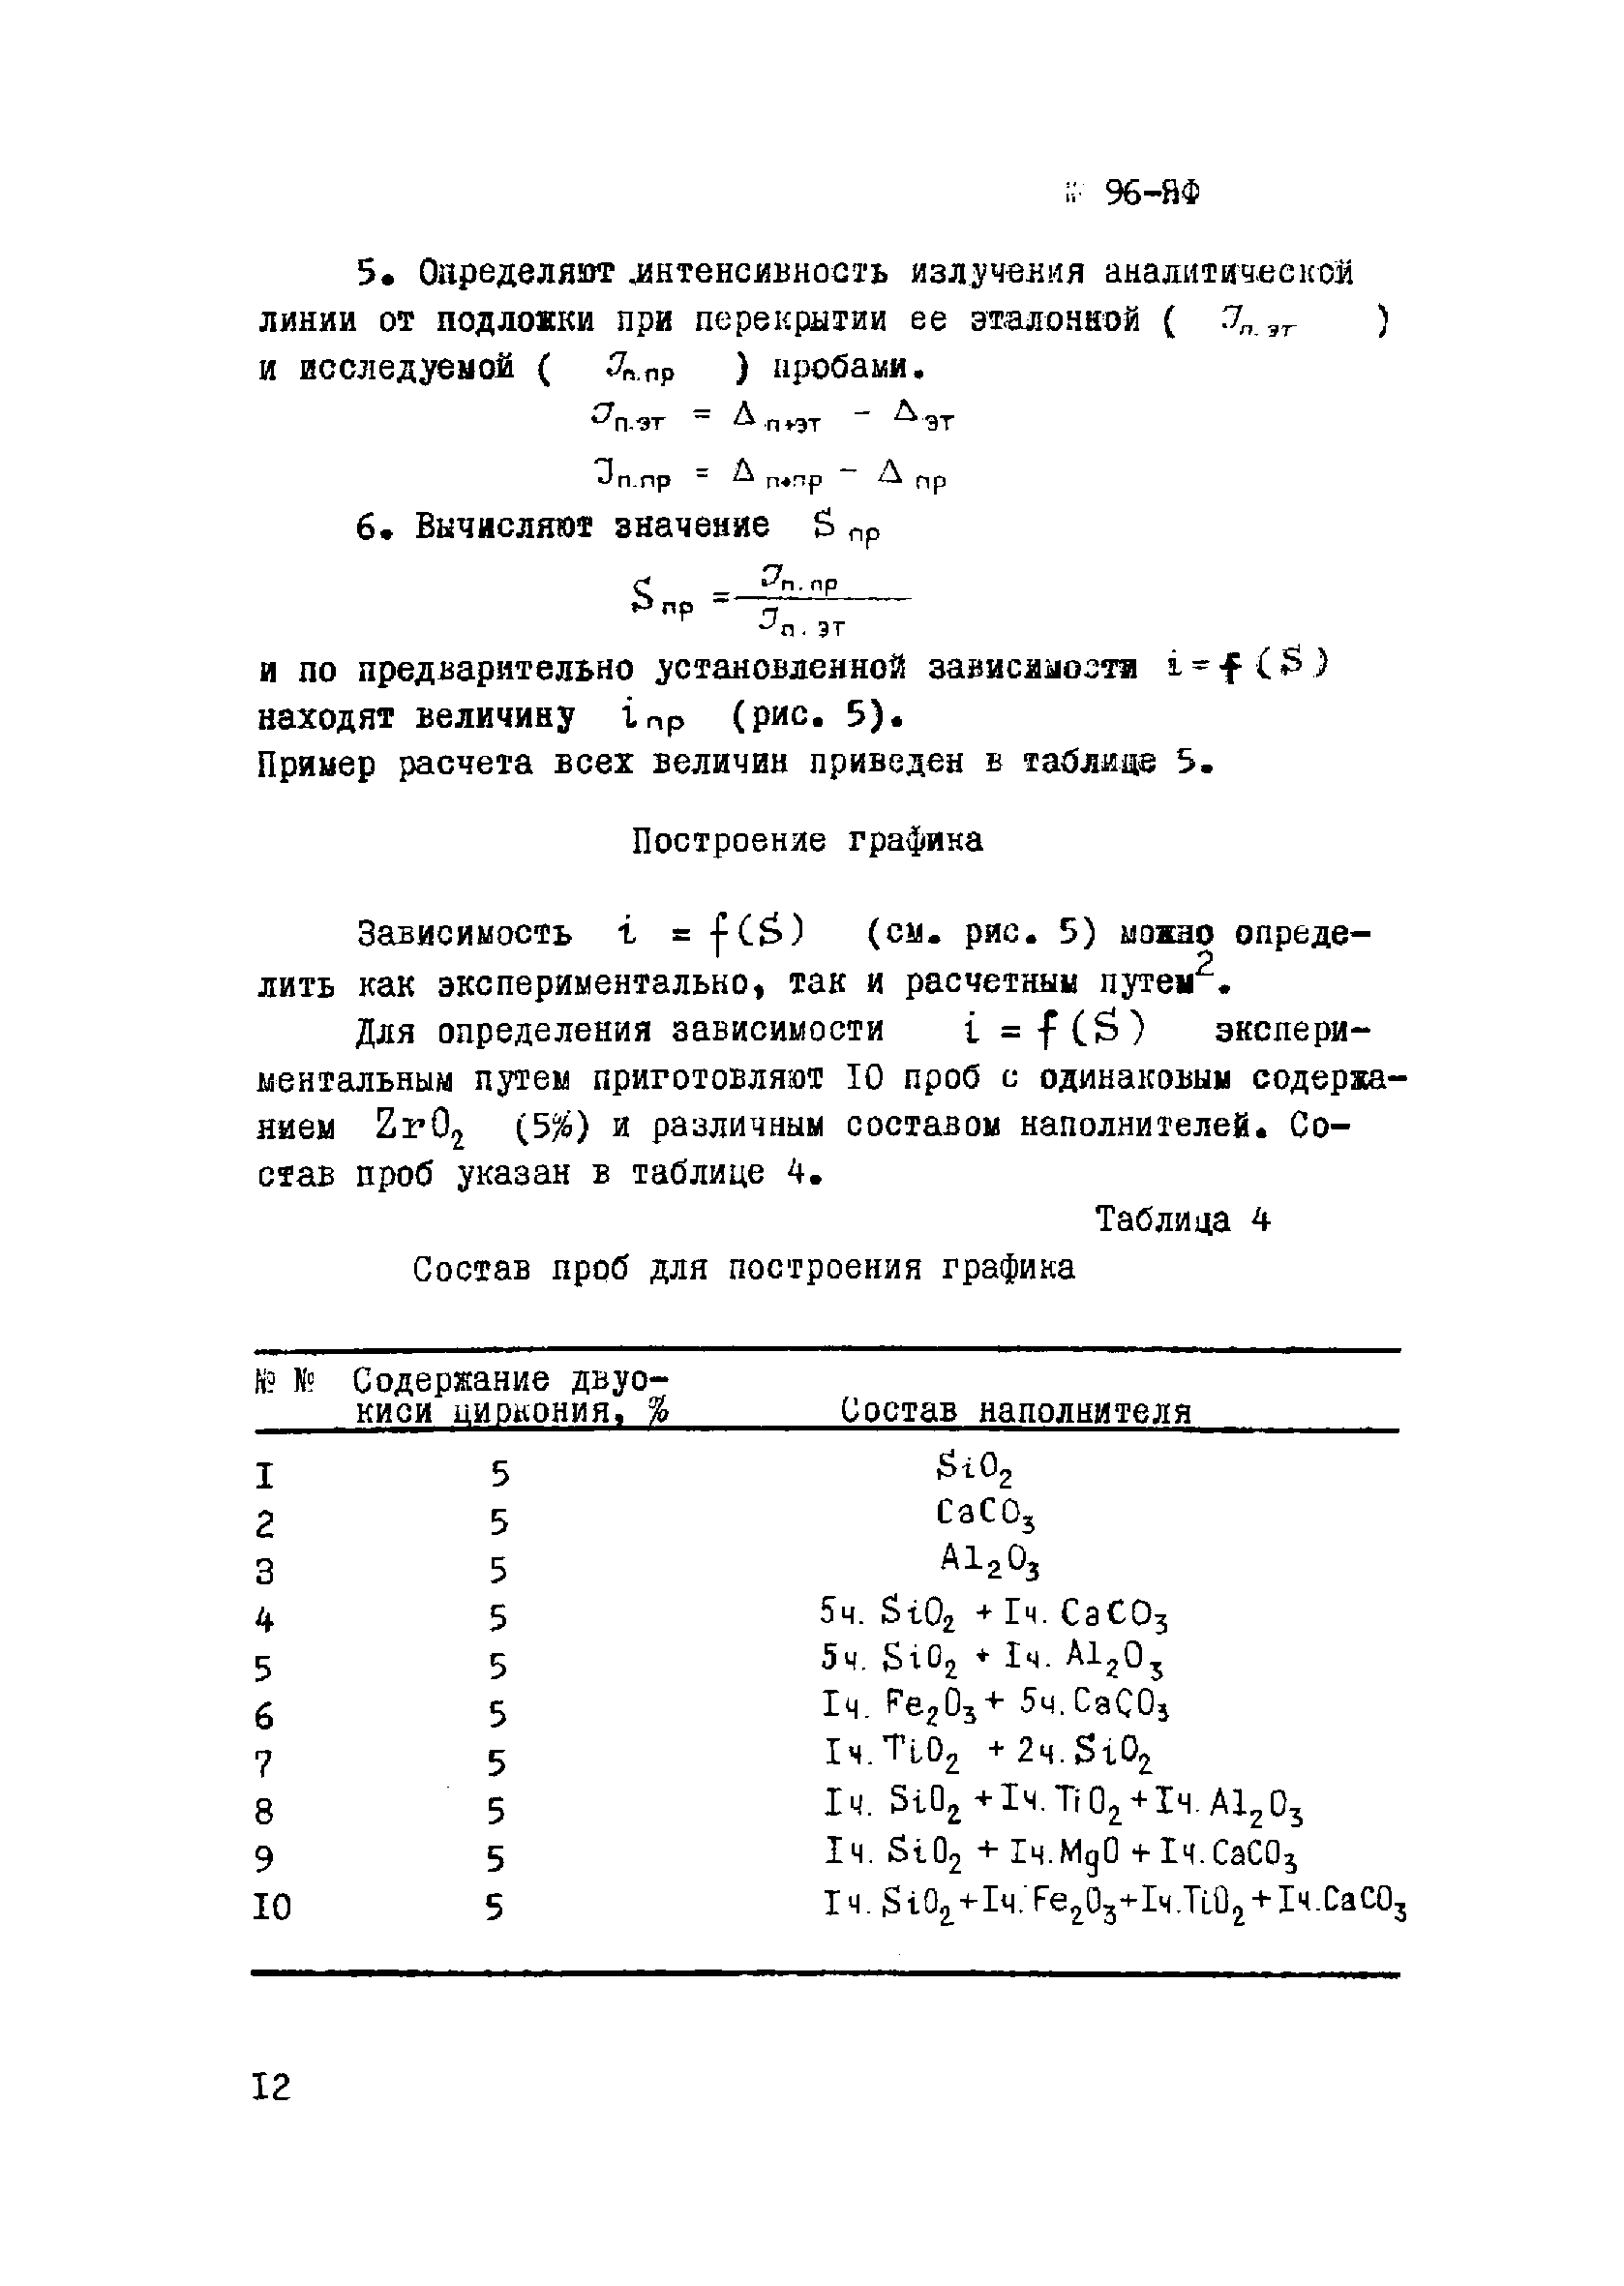 Инструкция НСАМ 96-ЯФ